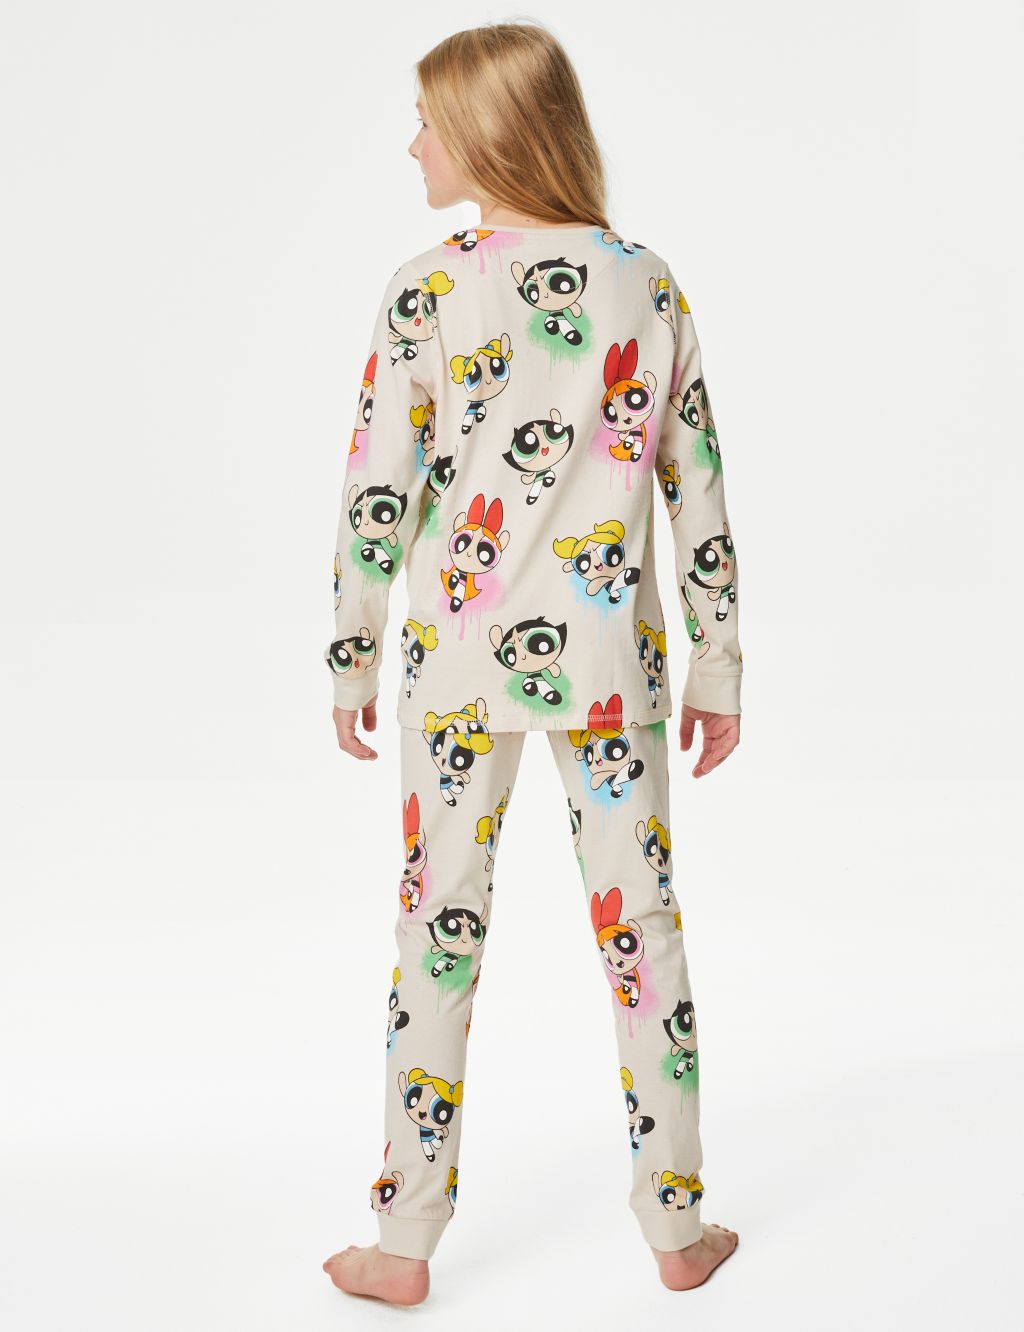 Powerpuff Girls™ Pyjamas (6-16 Yrs) image 3